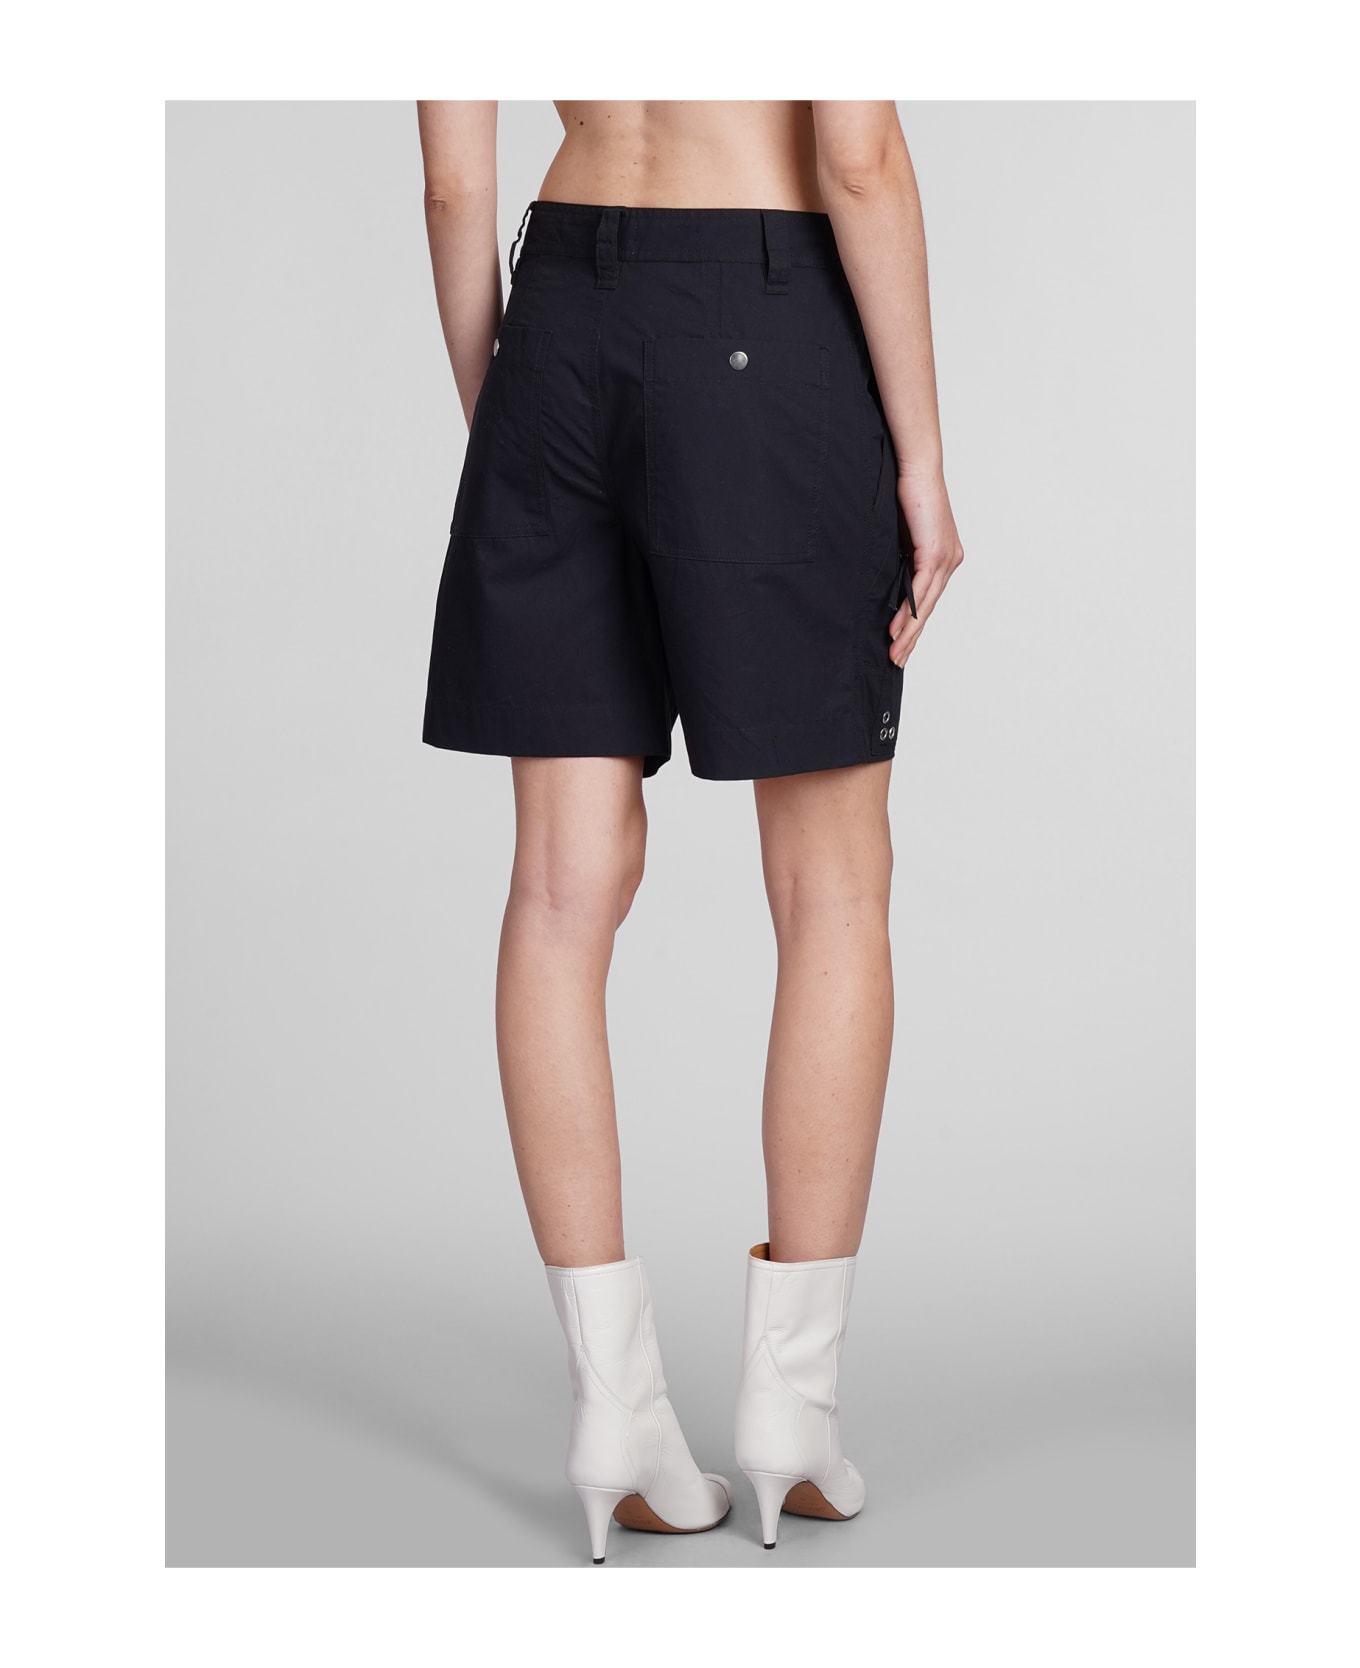 Marant Étoile Kynan High-waist Shorts - black ショートパンツ